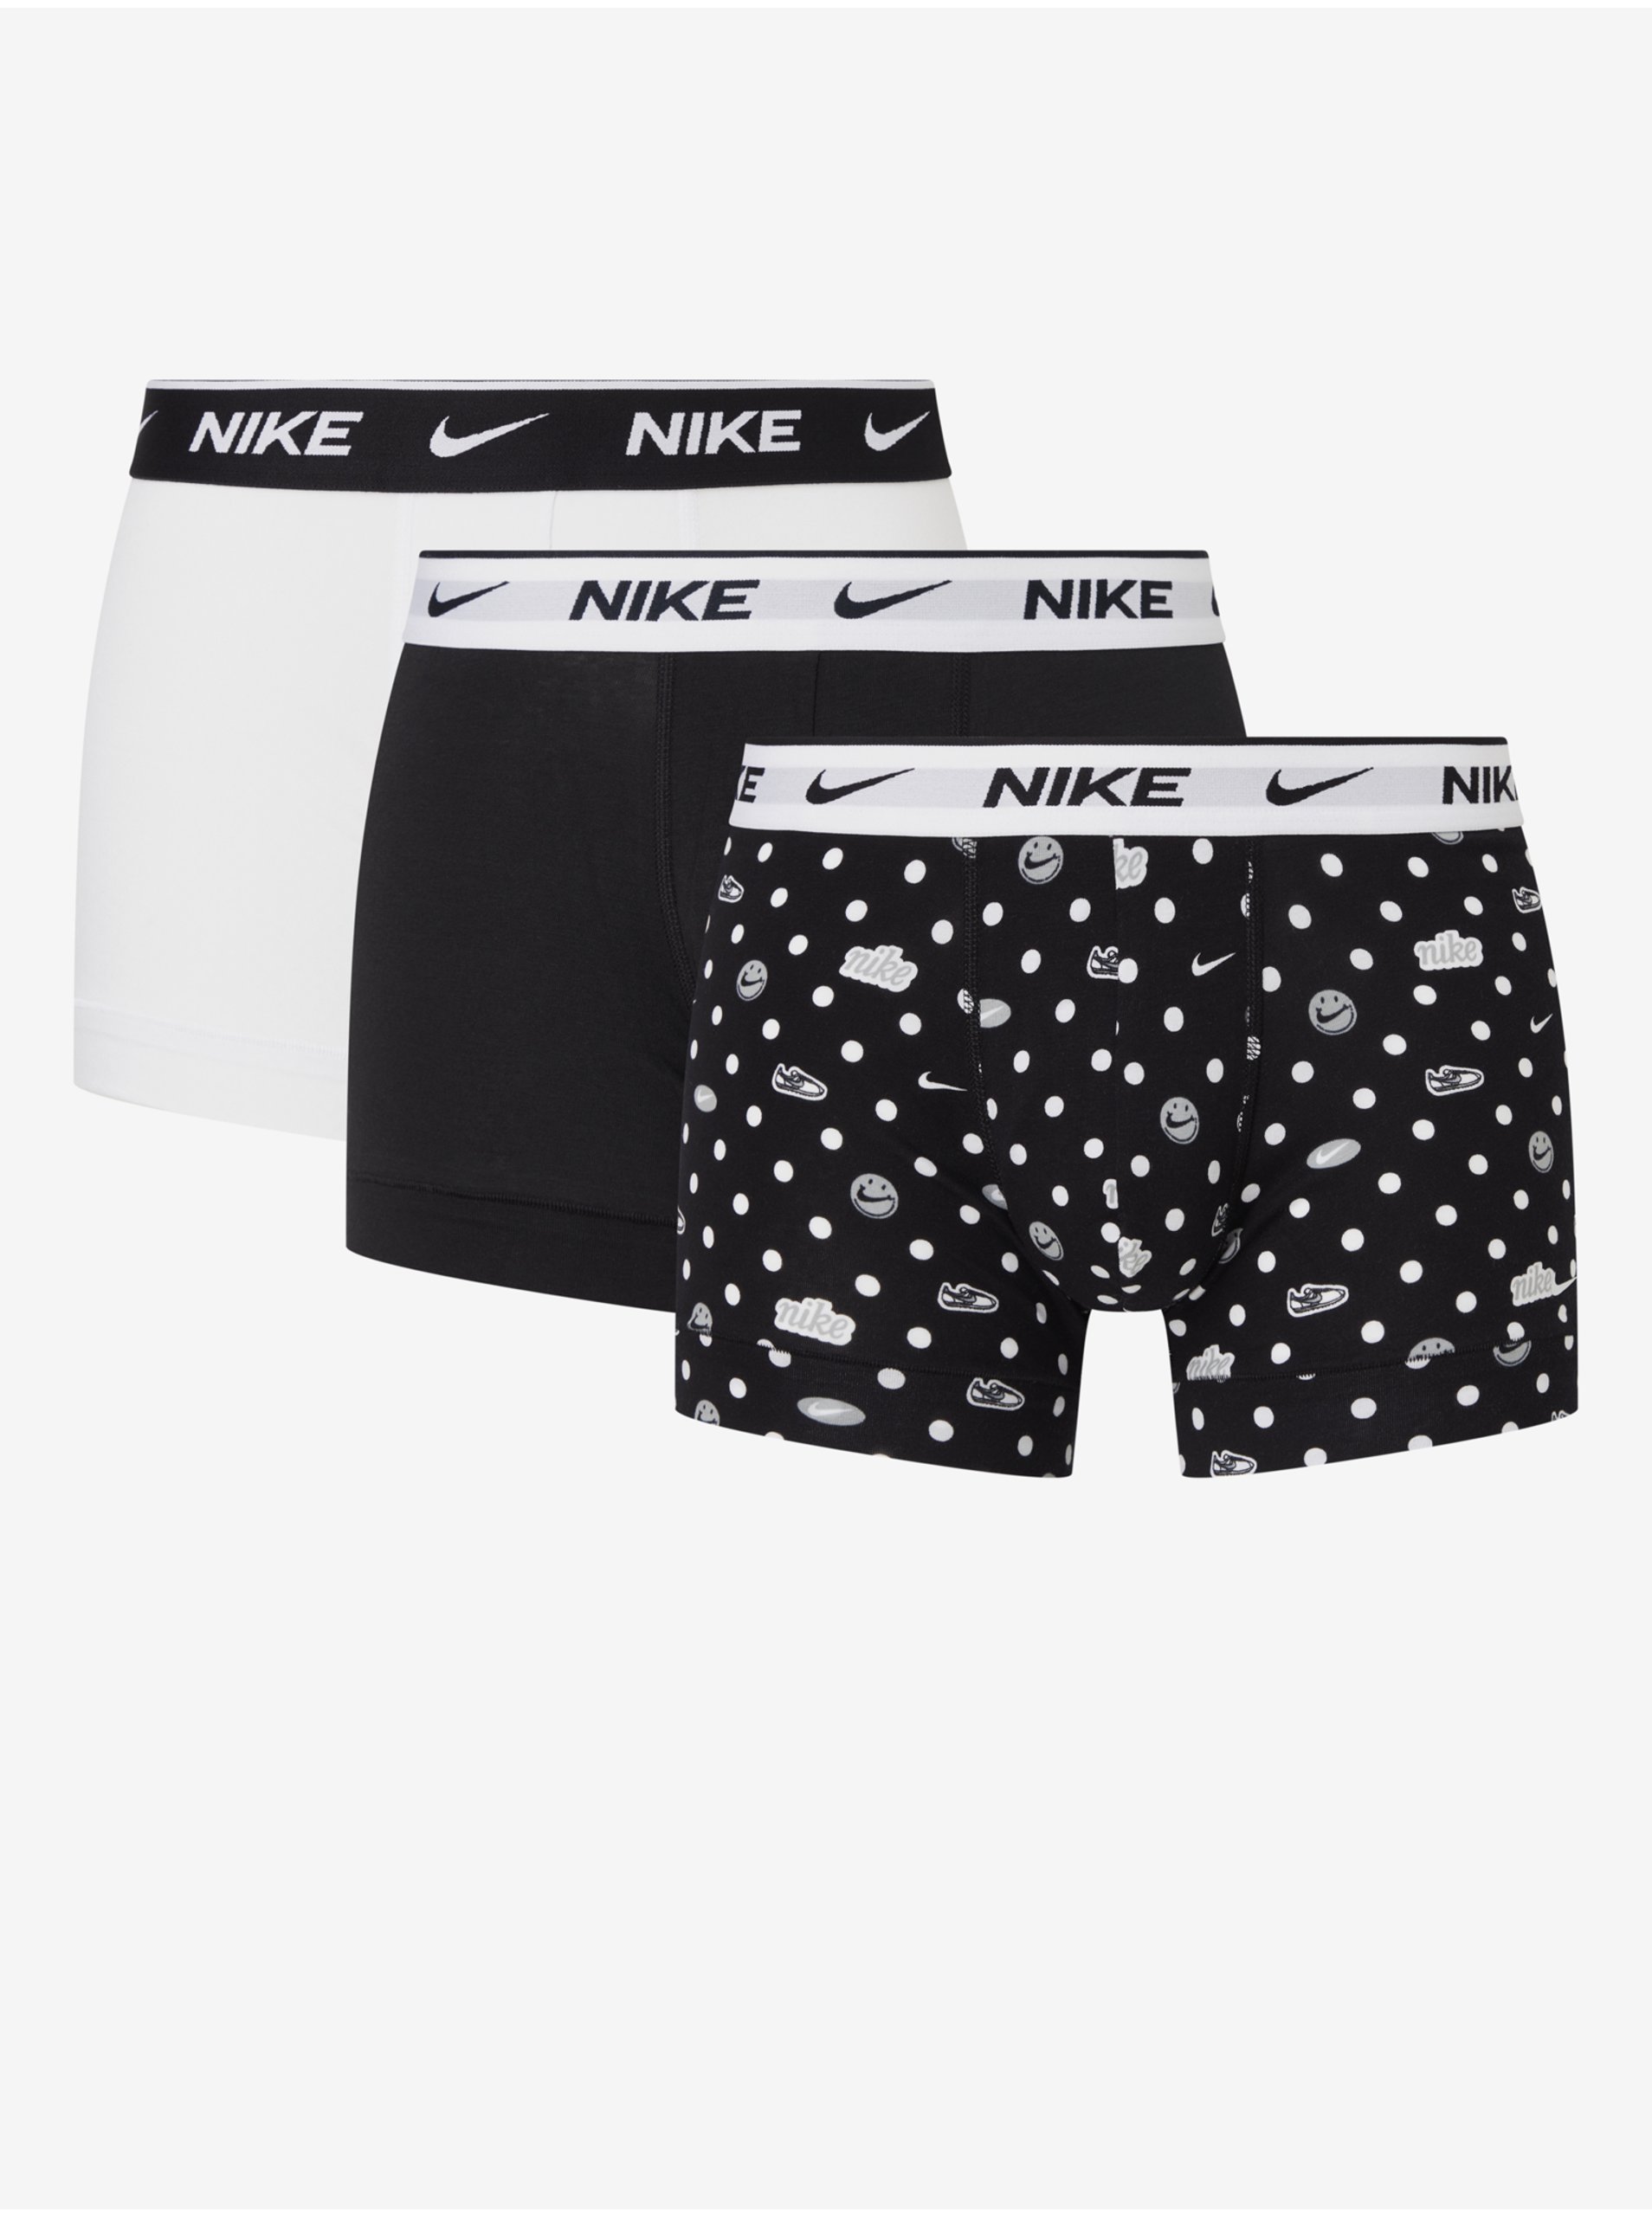 Levně Sada tří pánských boxerek v černé, bílé a vzorované barvě Nike